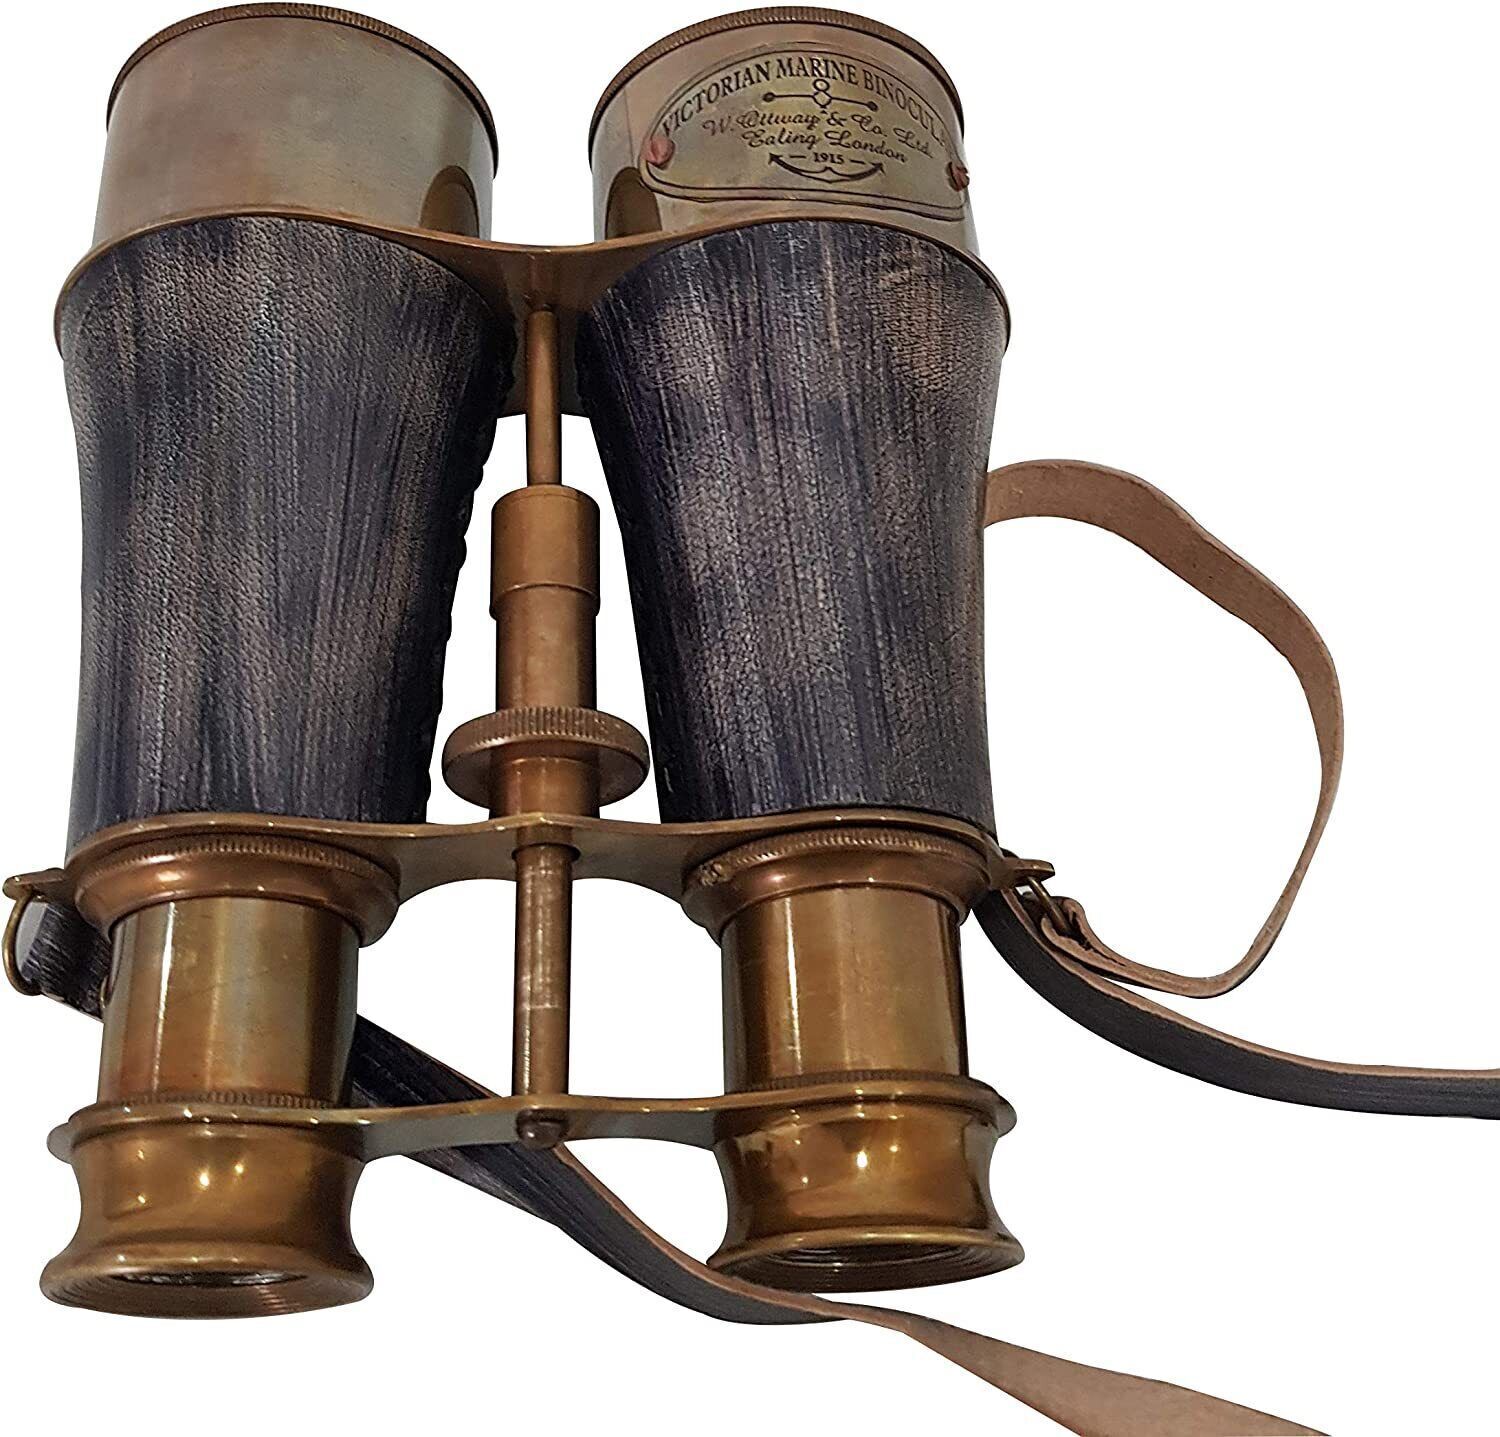 6 inches Antique Brass Victorian Marine Binoculars, Handmade Vintage Gift Decor